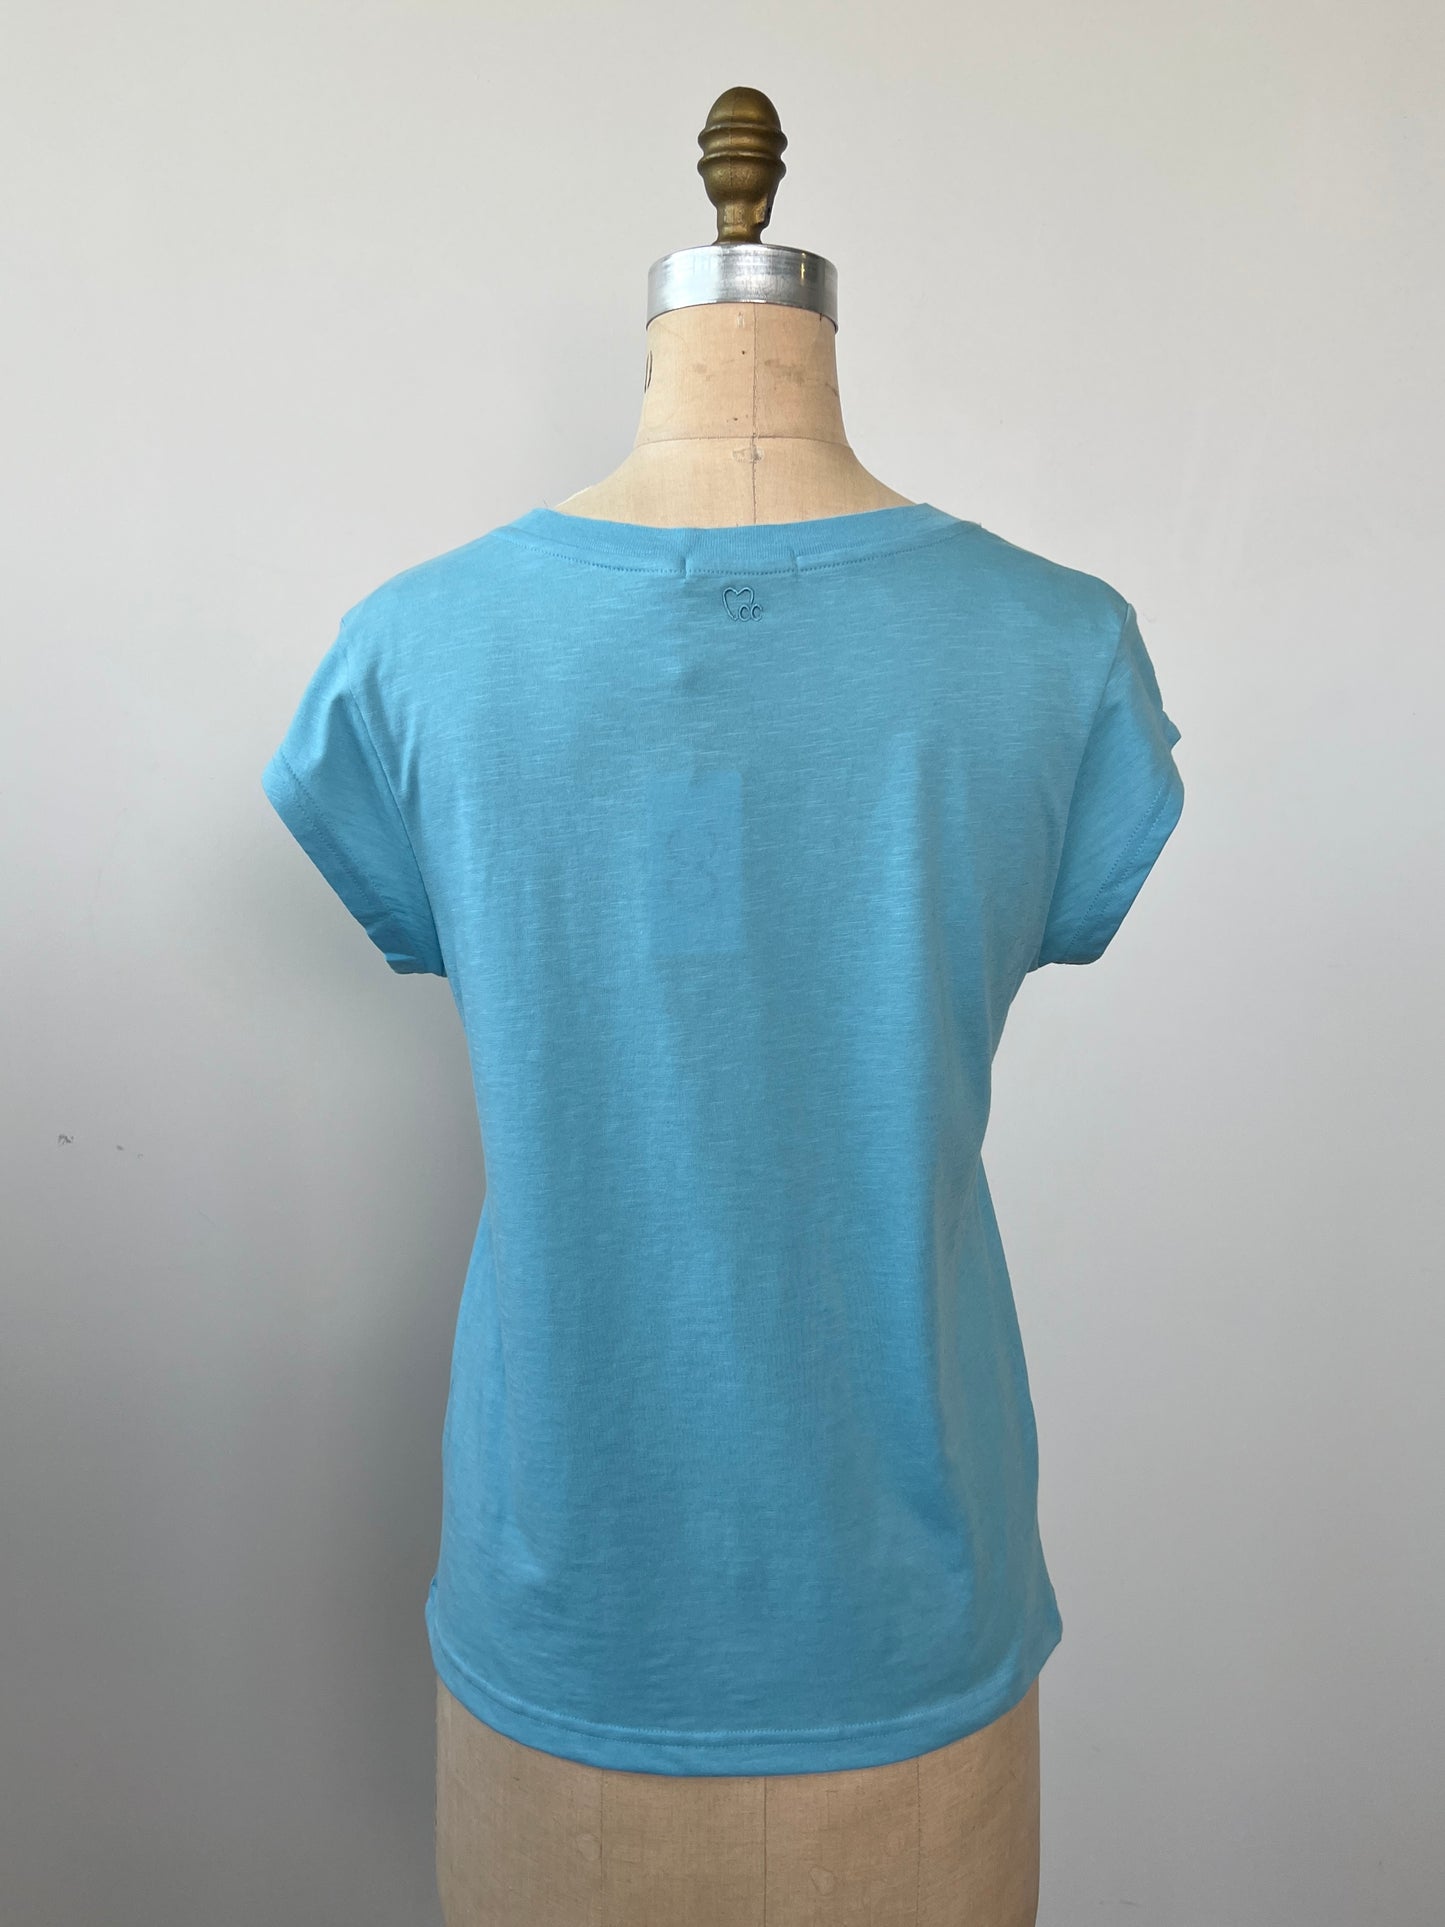 T-shirt en tissage tramé bleu (S)